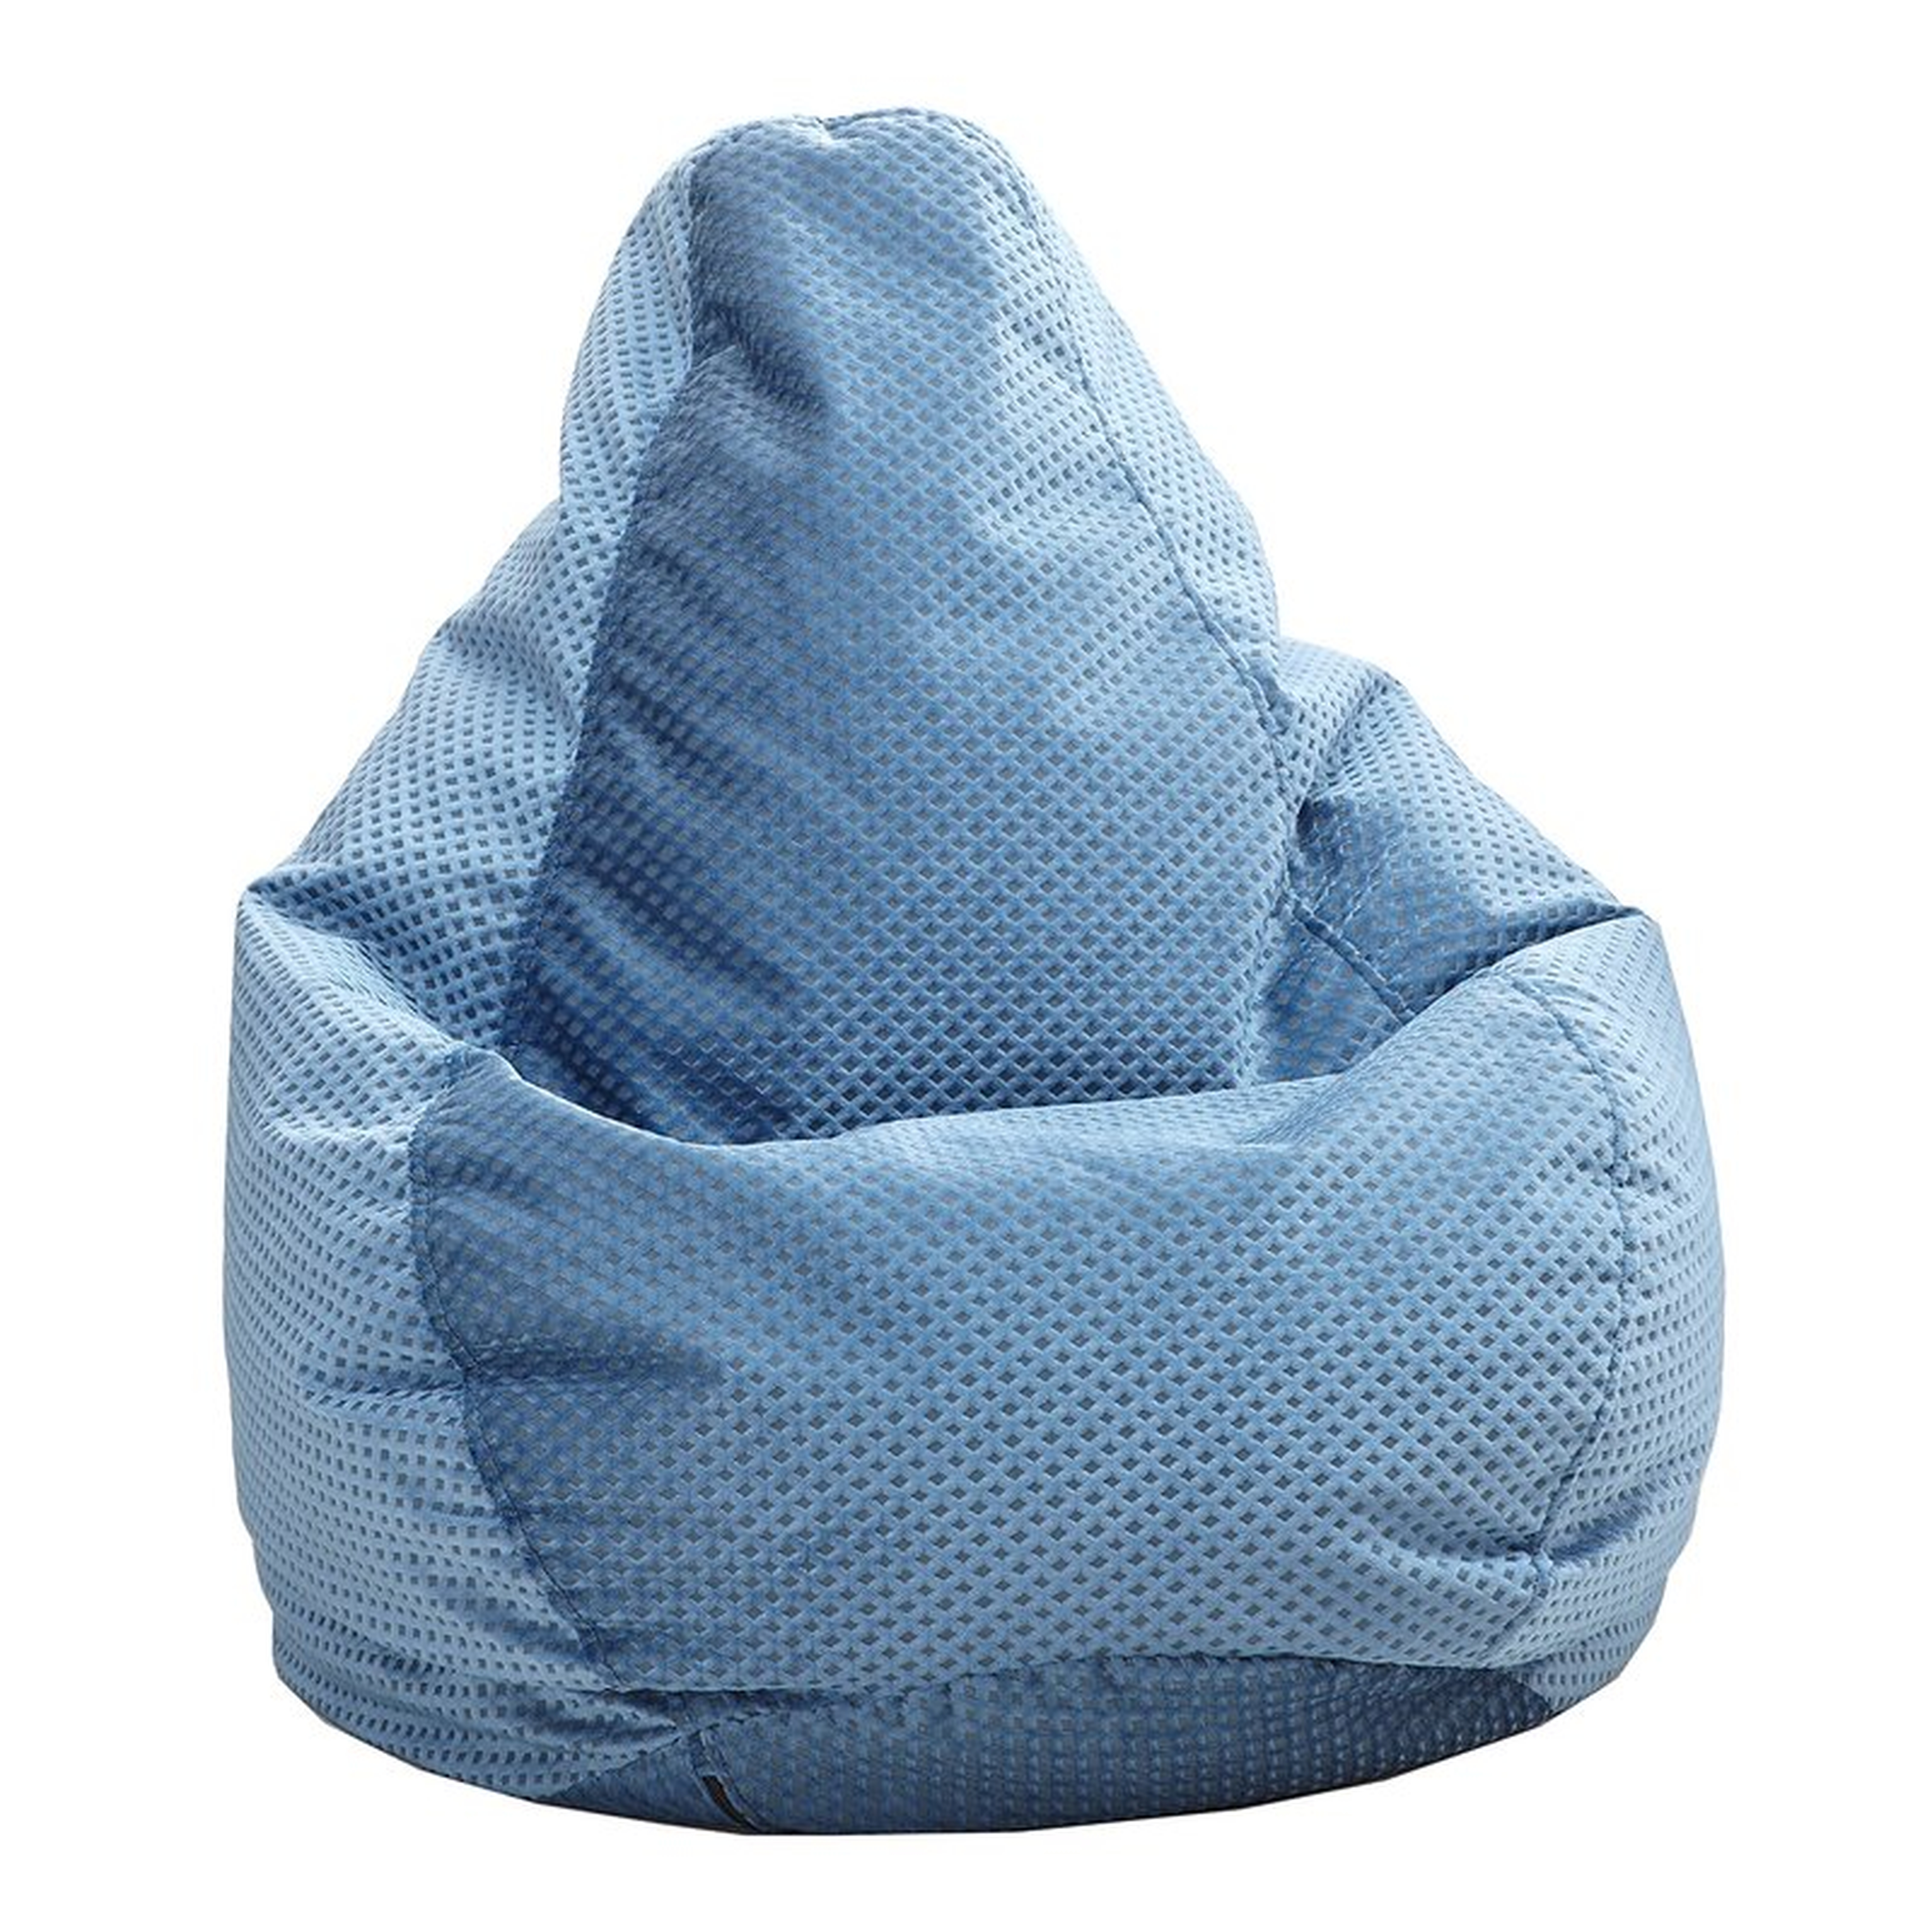 Standard Bean Bag Chair & Lounger - Blue - Wayfair